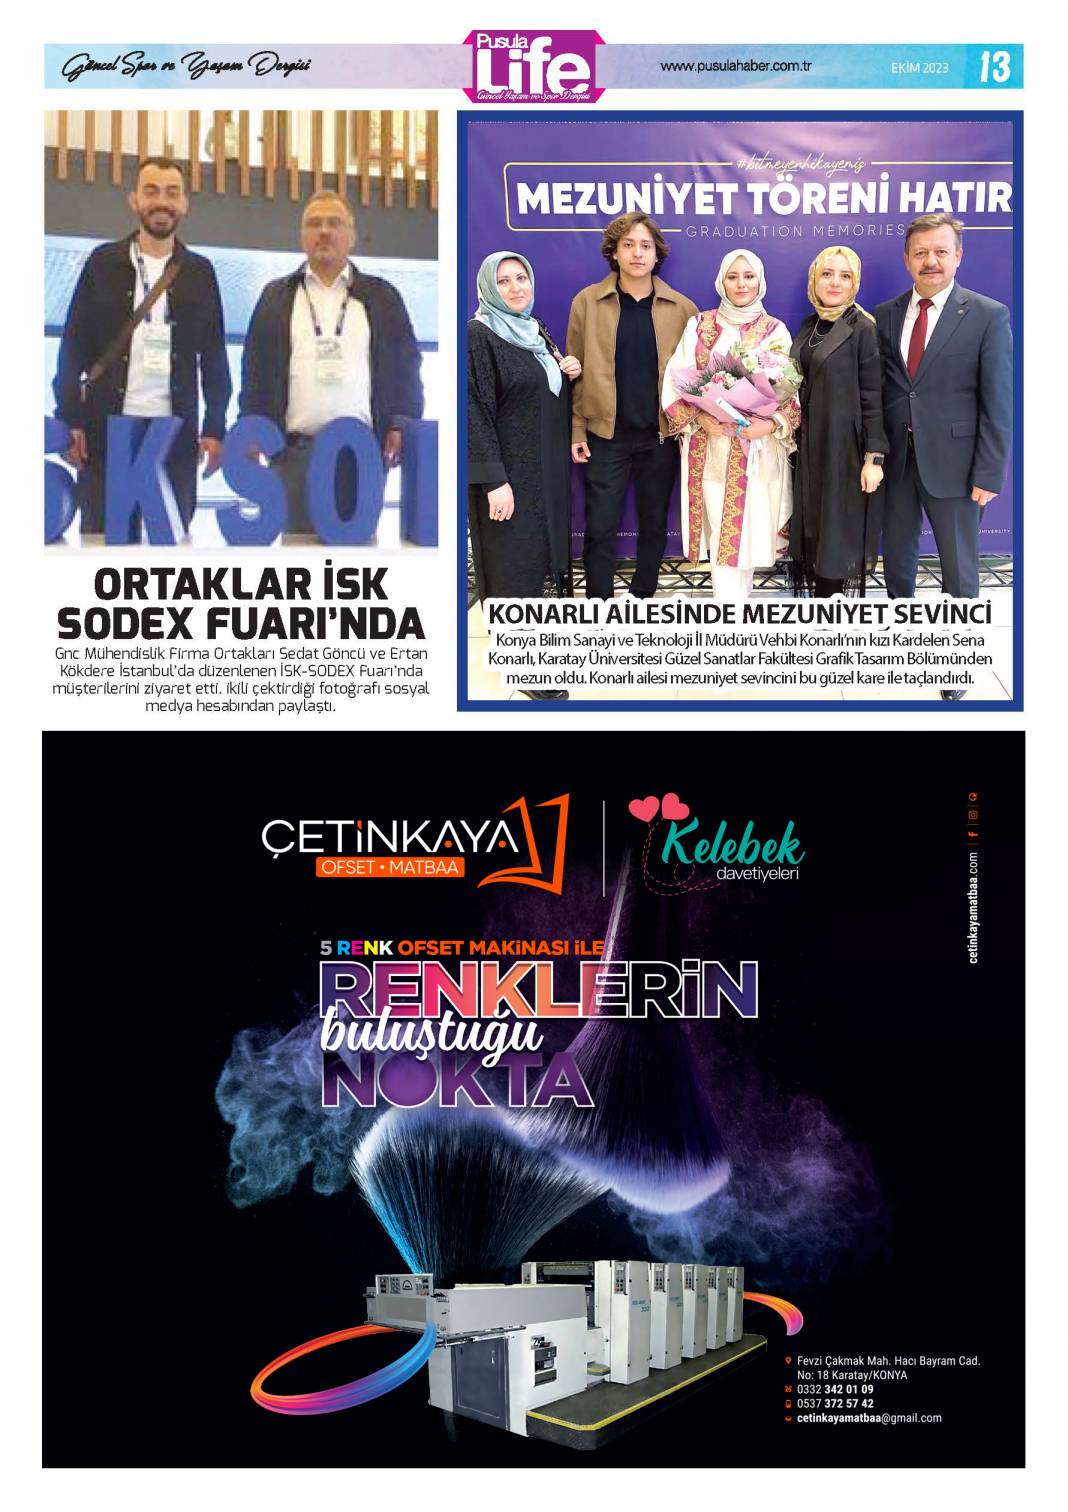 Konya'nın magazin dergisi PS Life'nin 320. sayısı yayınlandı 13